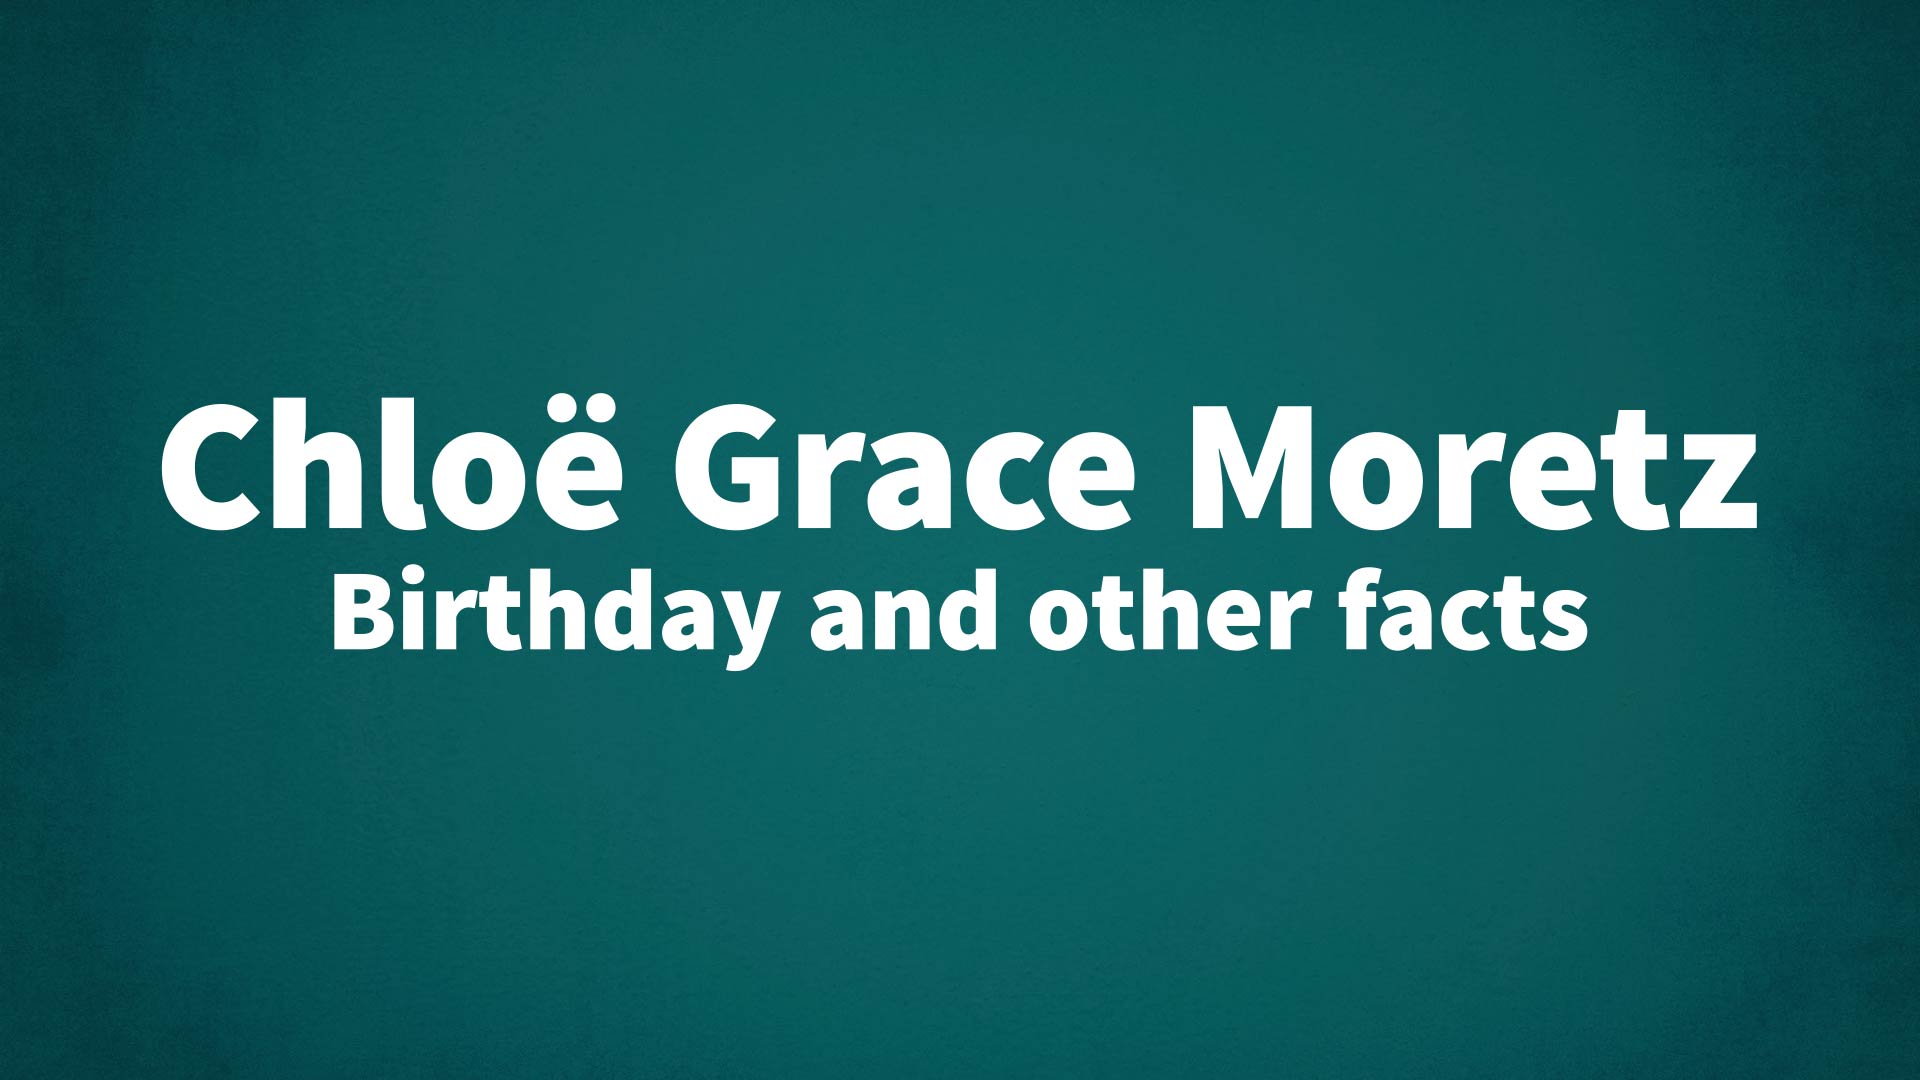 HAPPPY BIRTHDAY : CHLOE GRACE MORETZ